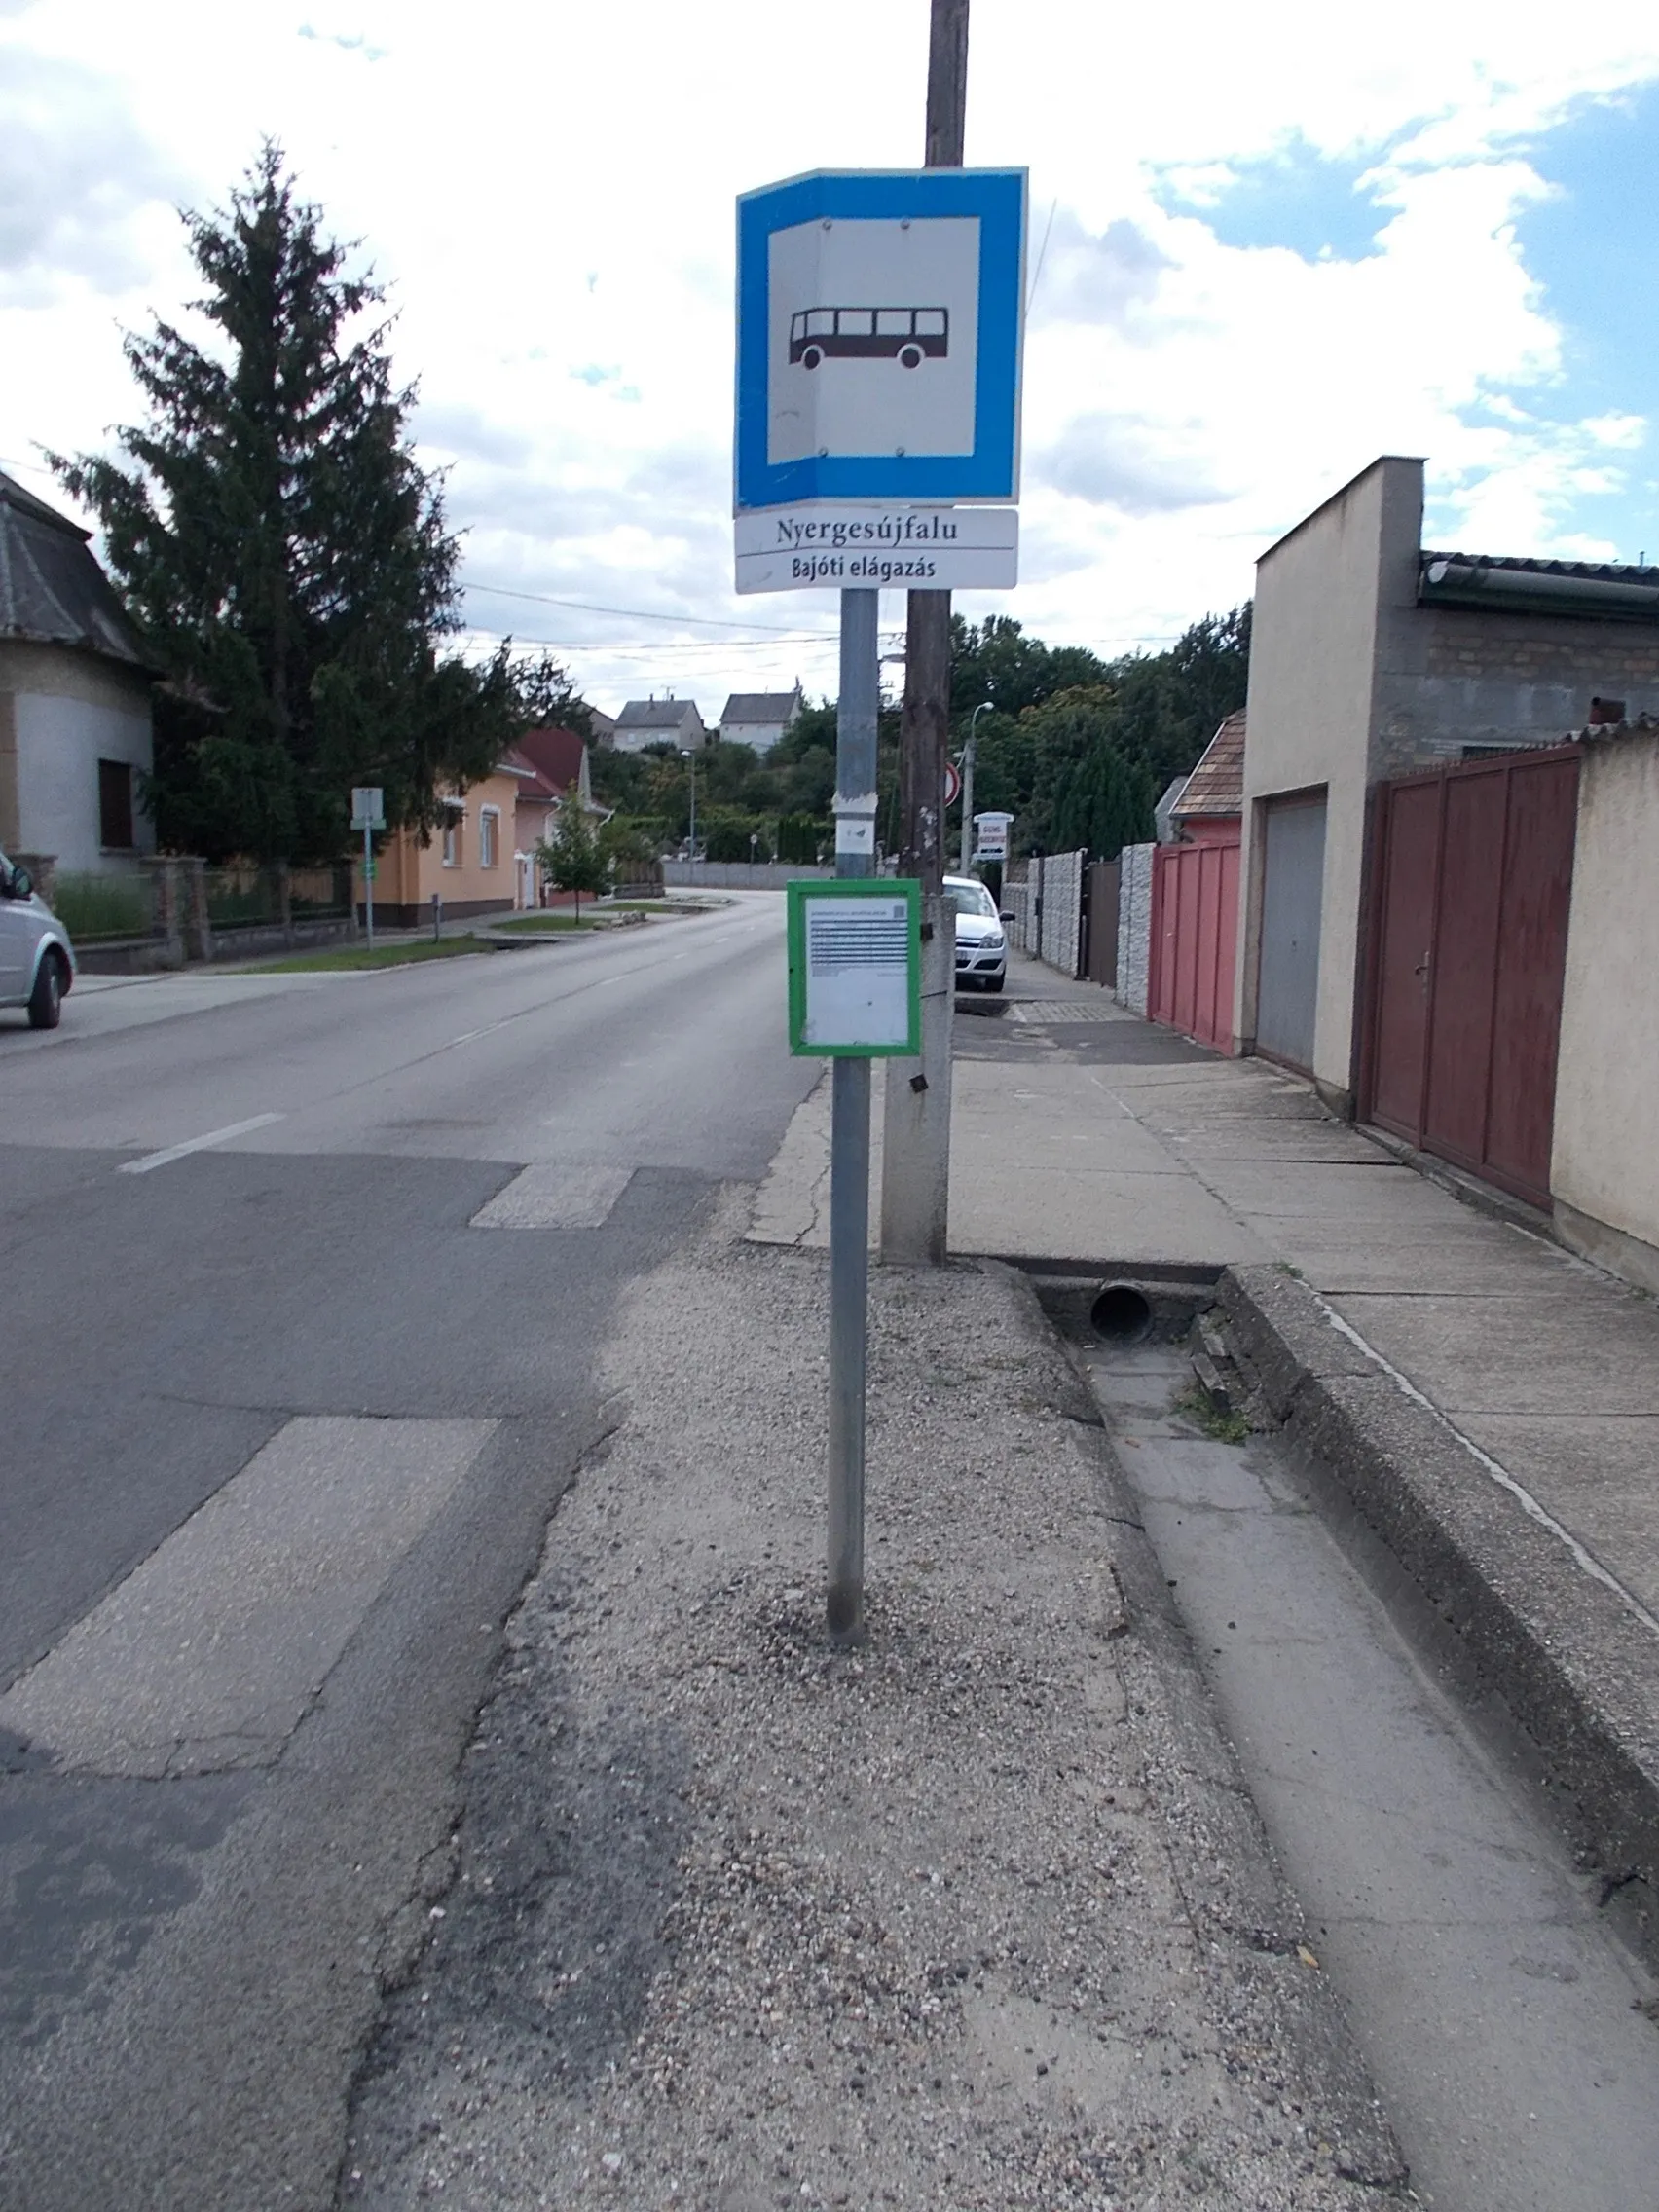 Photo showing: : 'Nyergesújfalu, bajóti elágazás' bus stop - Munkácsy liget, Nyergesújfalu, Komárom-Esztergom County, Hungary.